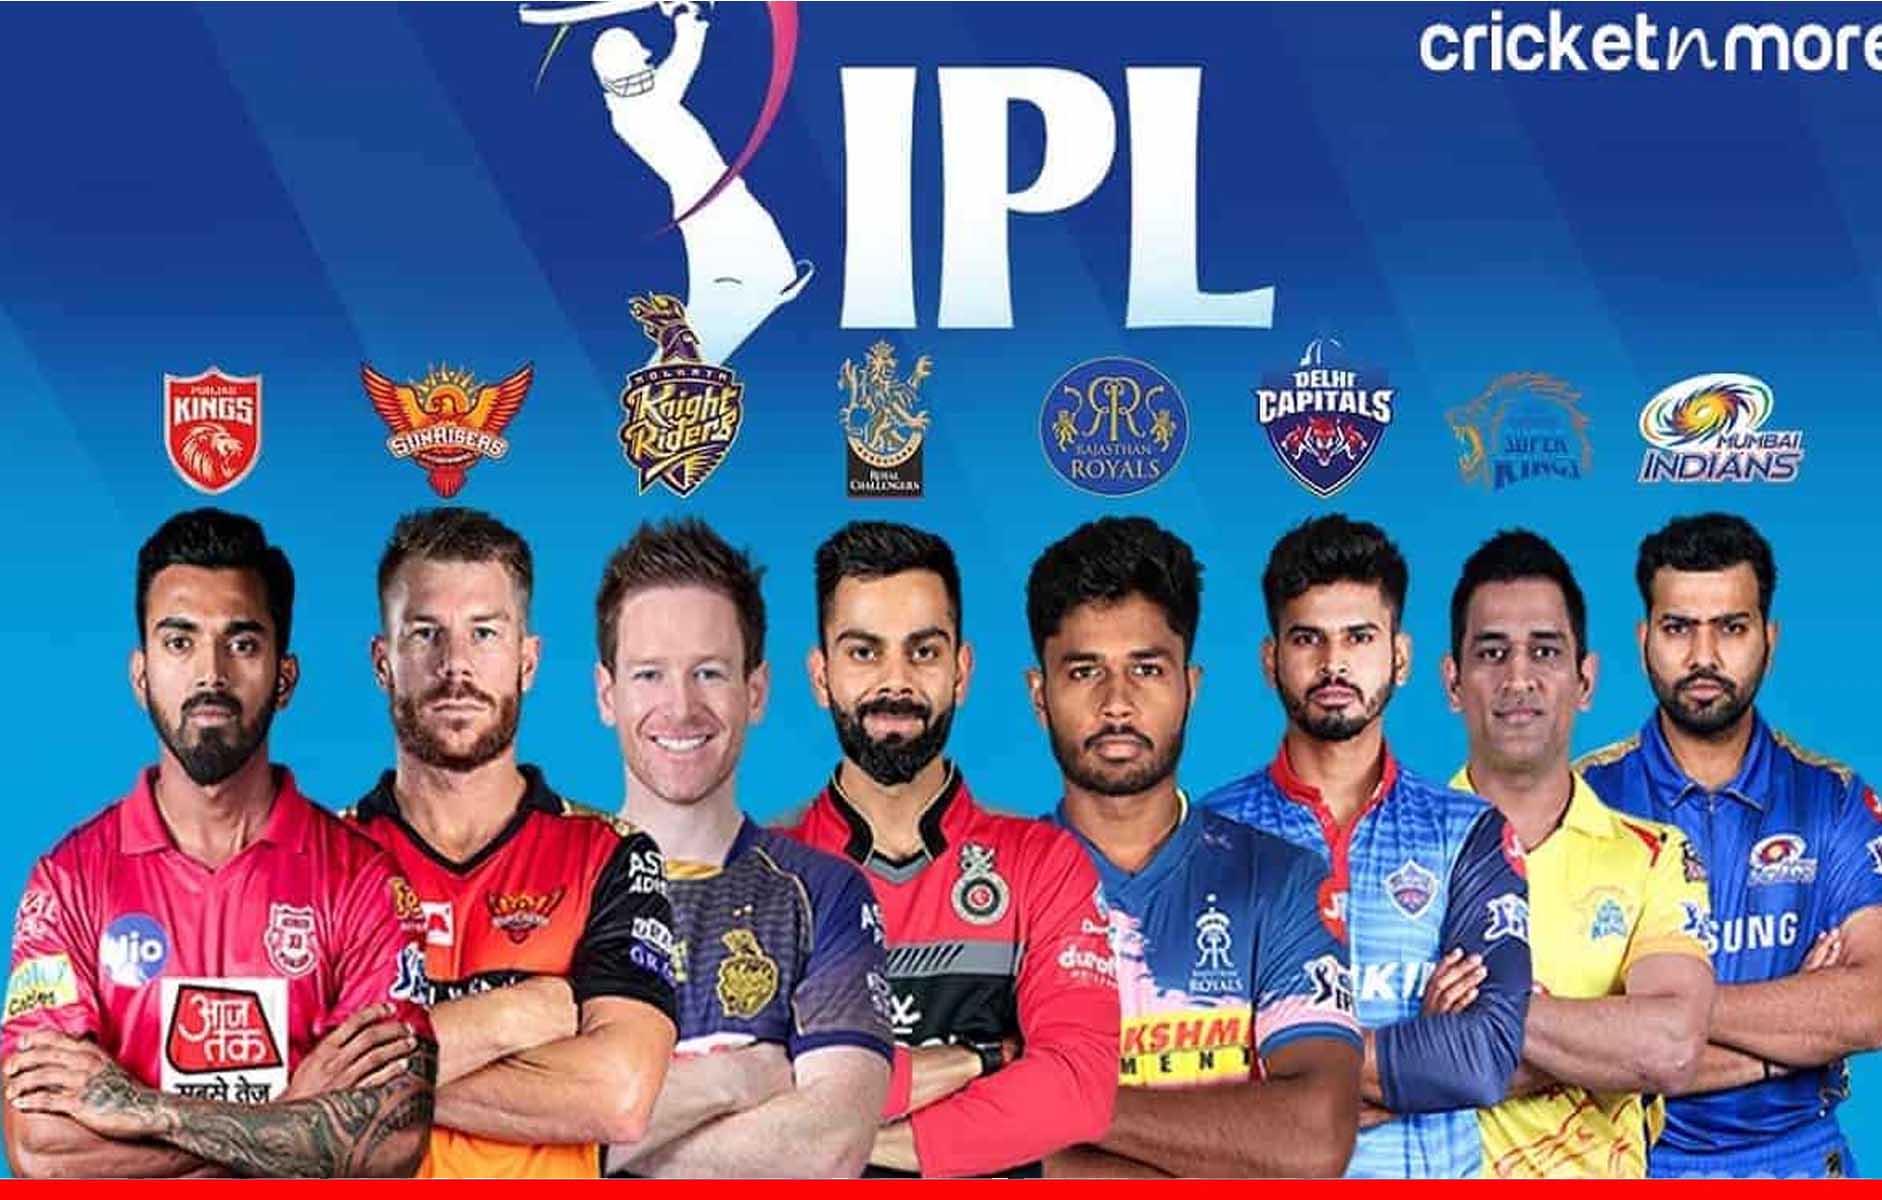 IPL 2021: आईपीएल के बचे मैचों का पूरा शेड्यूल, जानें आपकी पसंदीदा टीम कब किससे भिड़ेगी